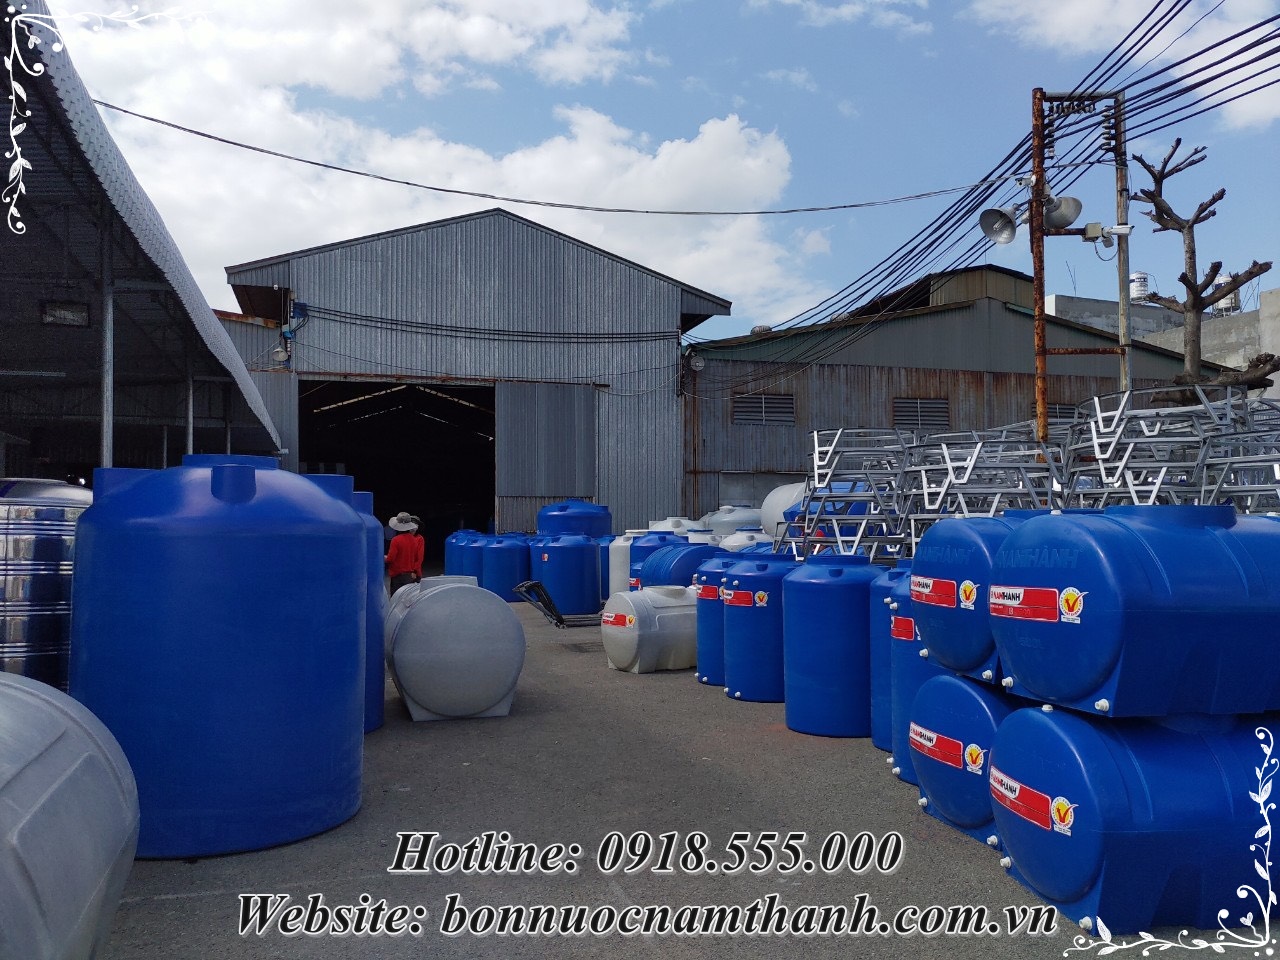 Chi nhánh phân phối bồn nước nhựa cao cấp Nam Thành chính hãng 